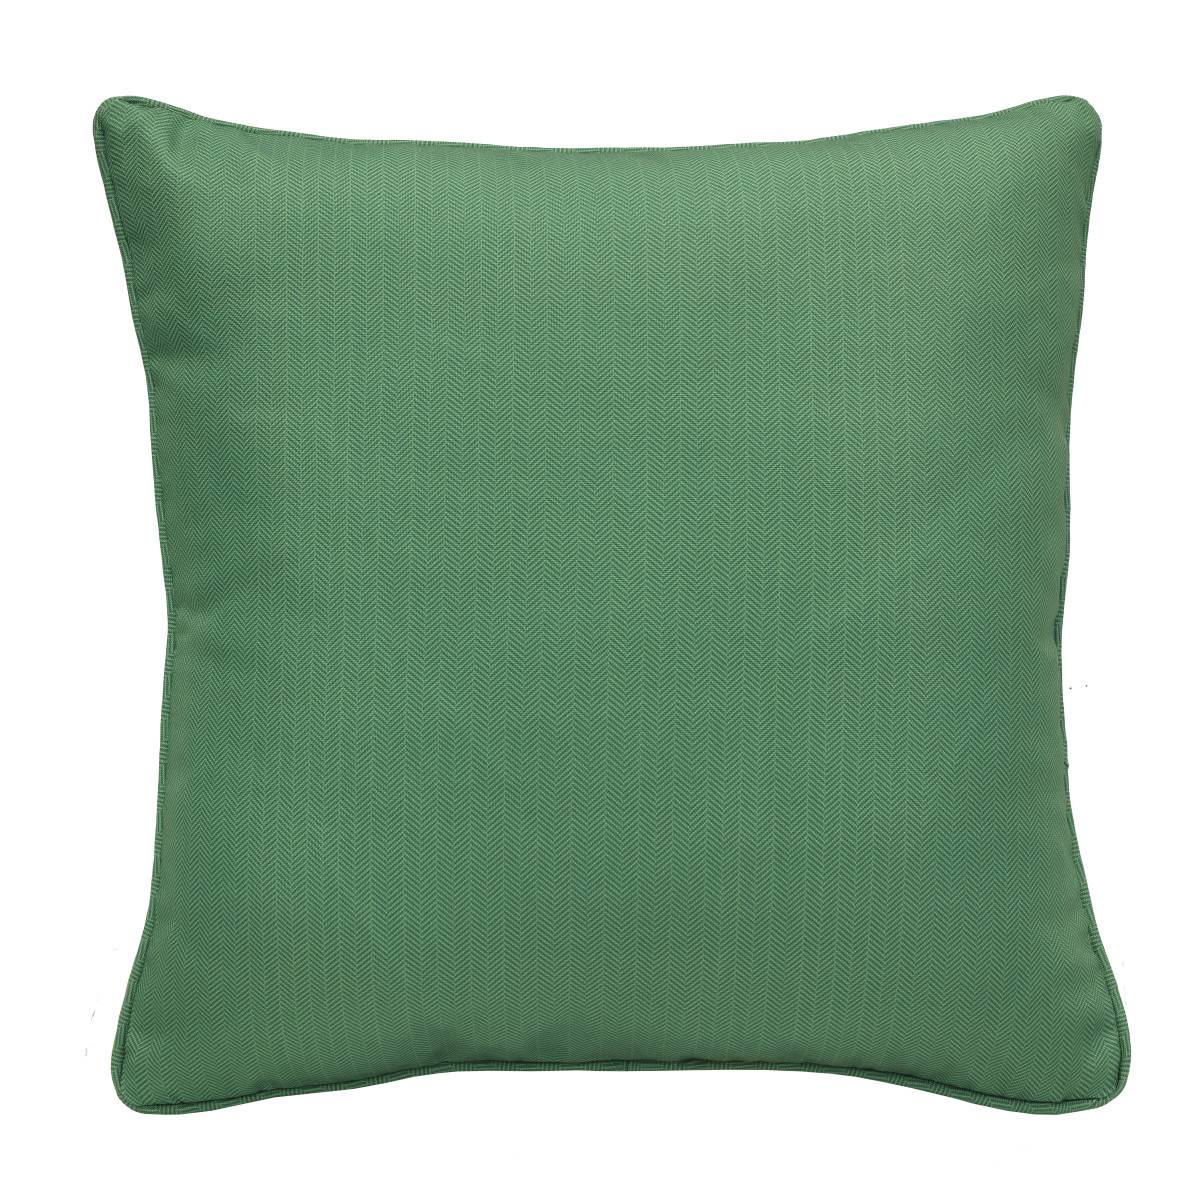 Commonwealth(tm) Herringbone Decorative Pillow - 18x18